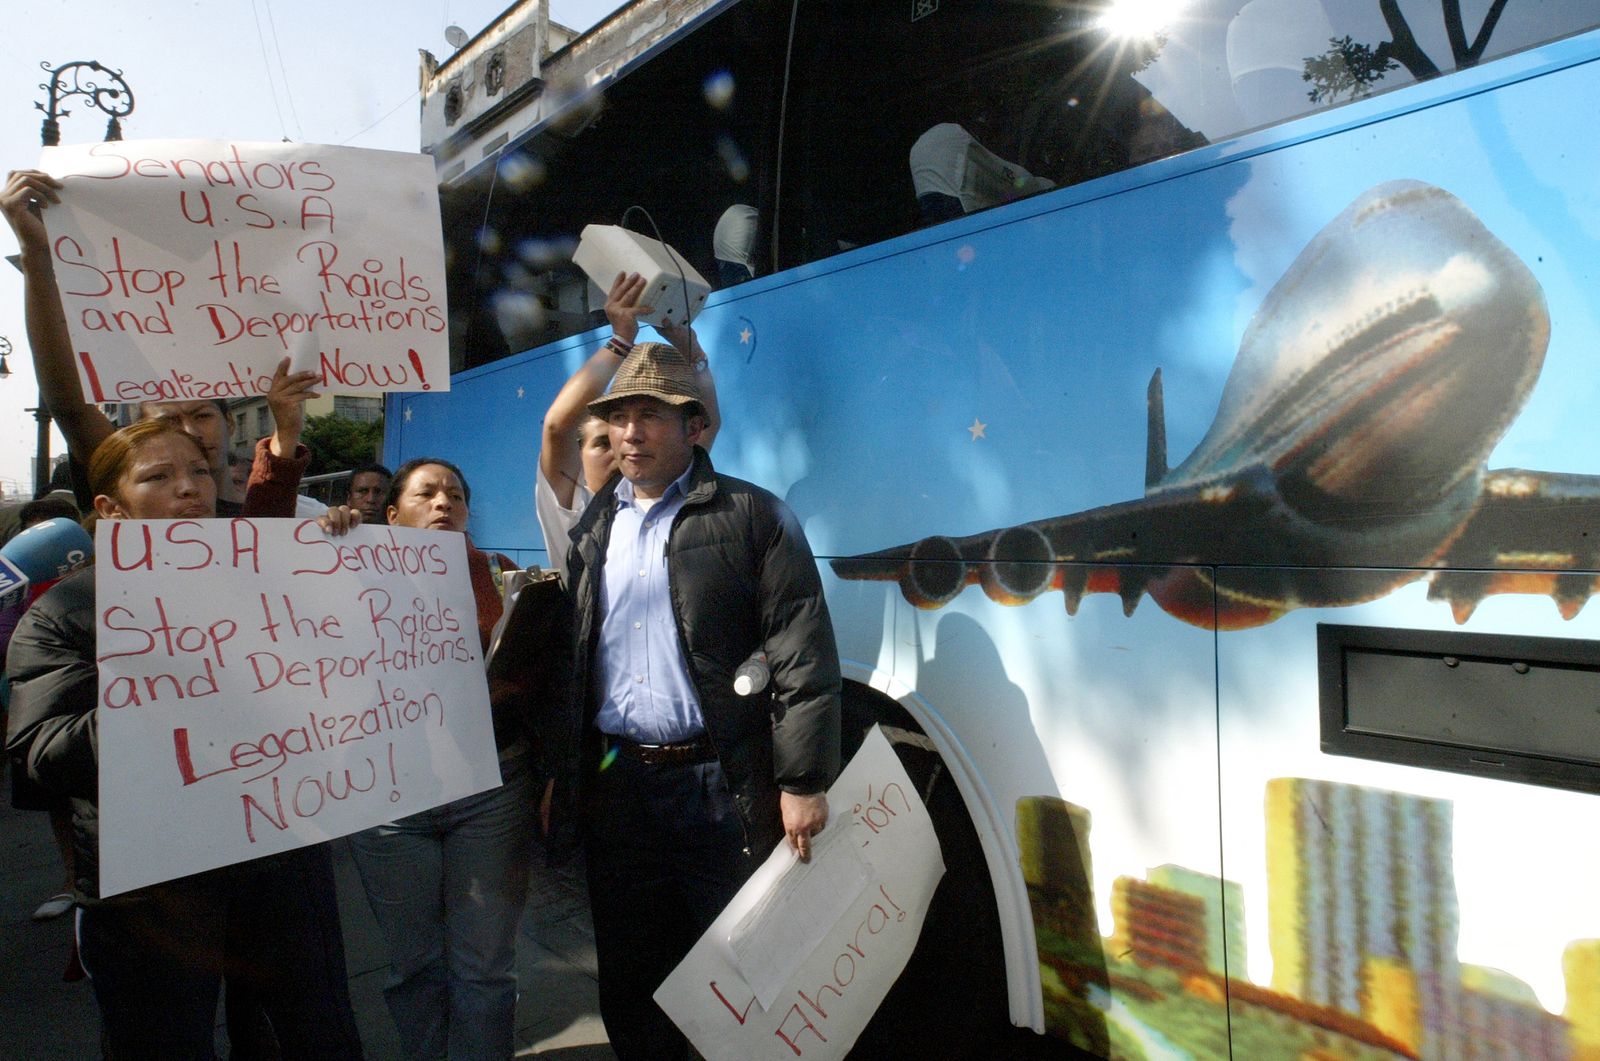 نشطاء هجرة يتظاهرون خلال وصول مجموعة من أعضاء الكونجرس الأميركي بقيادة زعيم الأغلبية الديمقراطية السابق في مجلس الشيوخ هاري ريد، إلى مجلس الشيوخ المكسيكي في مكسيكو سيتي، 29 نوفمبر 2007 - AFP